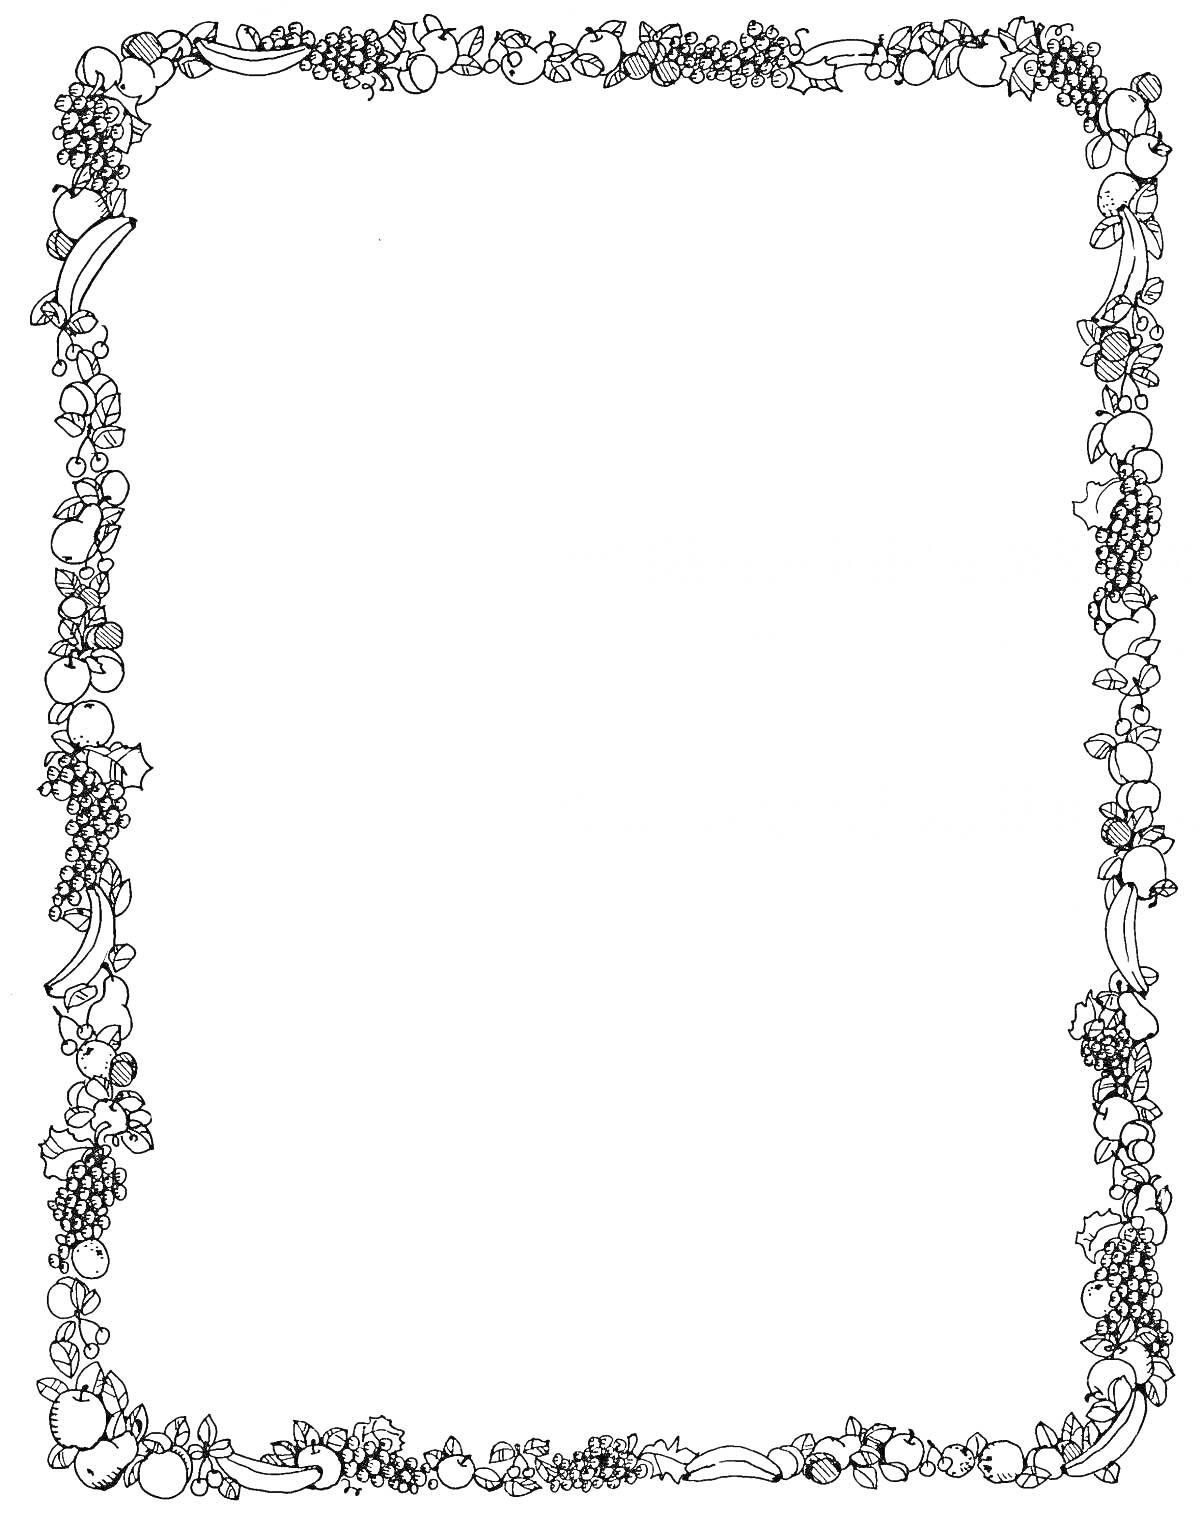 Раскраска Рамка для текста с новогодними украшениями, еловыми ветками и игрушками